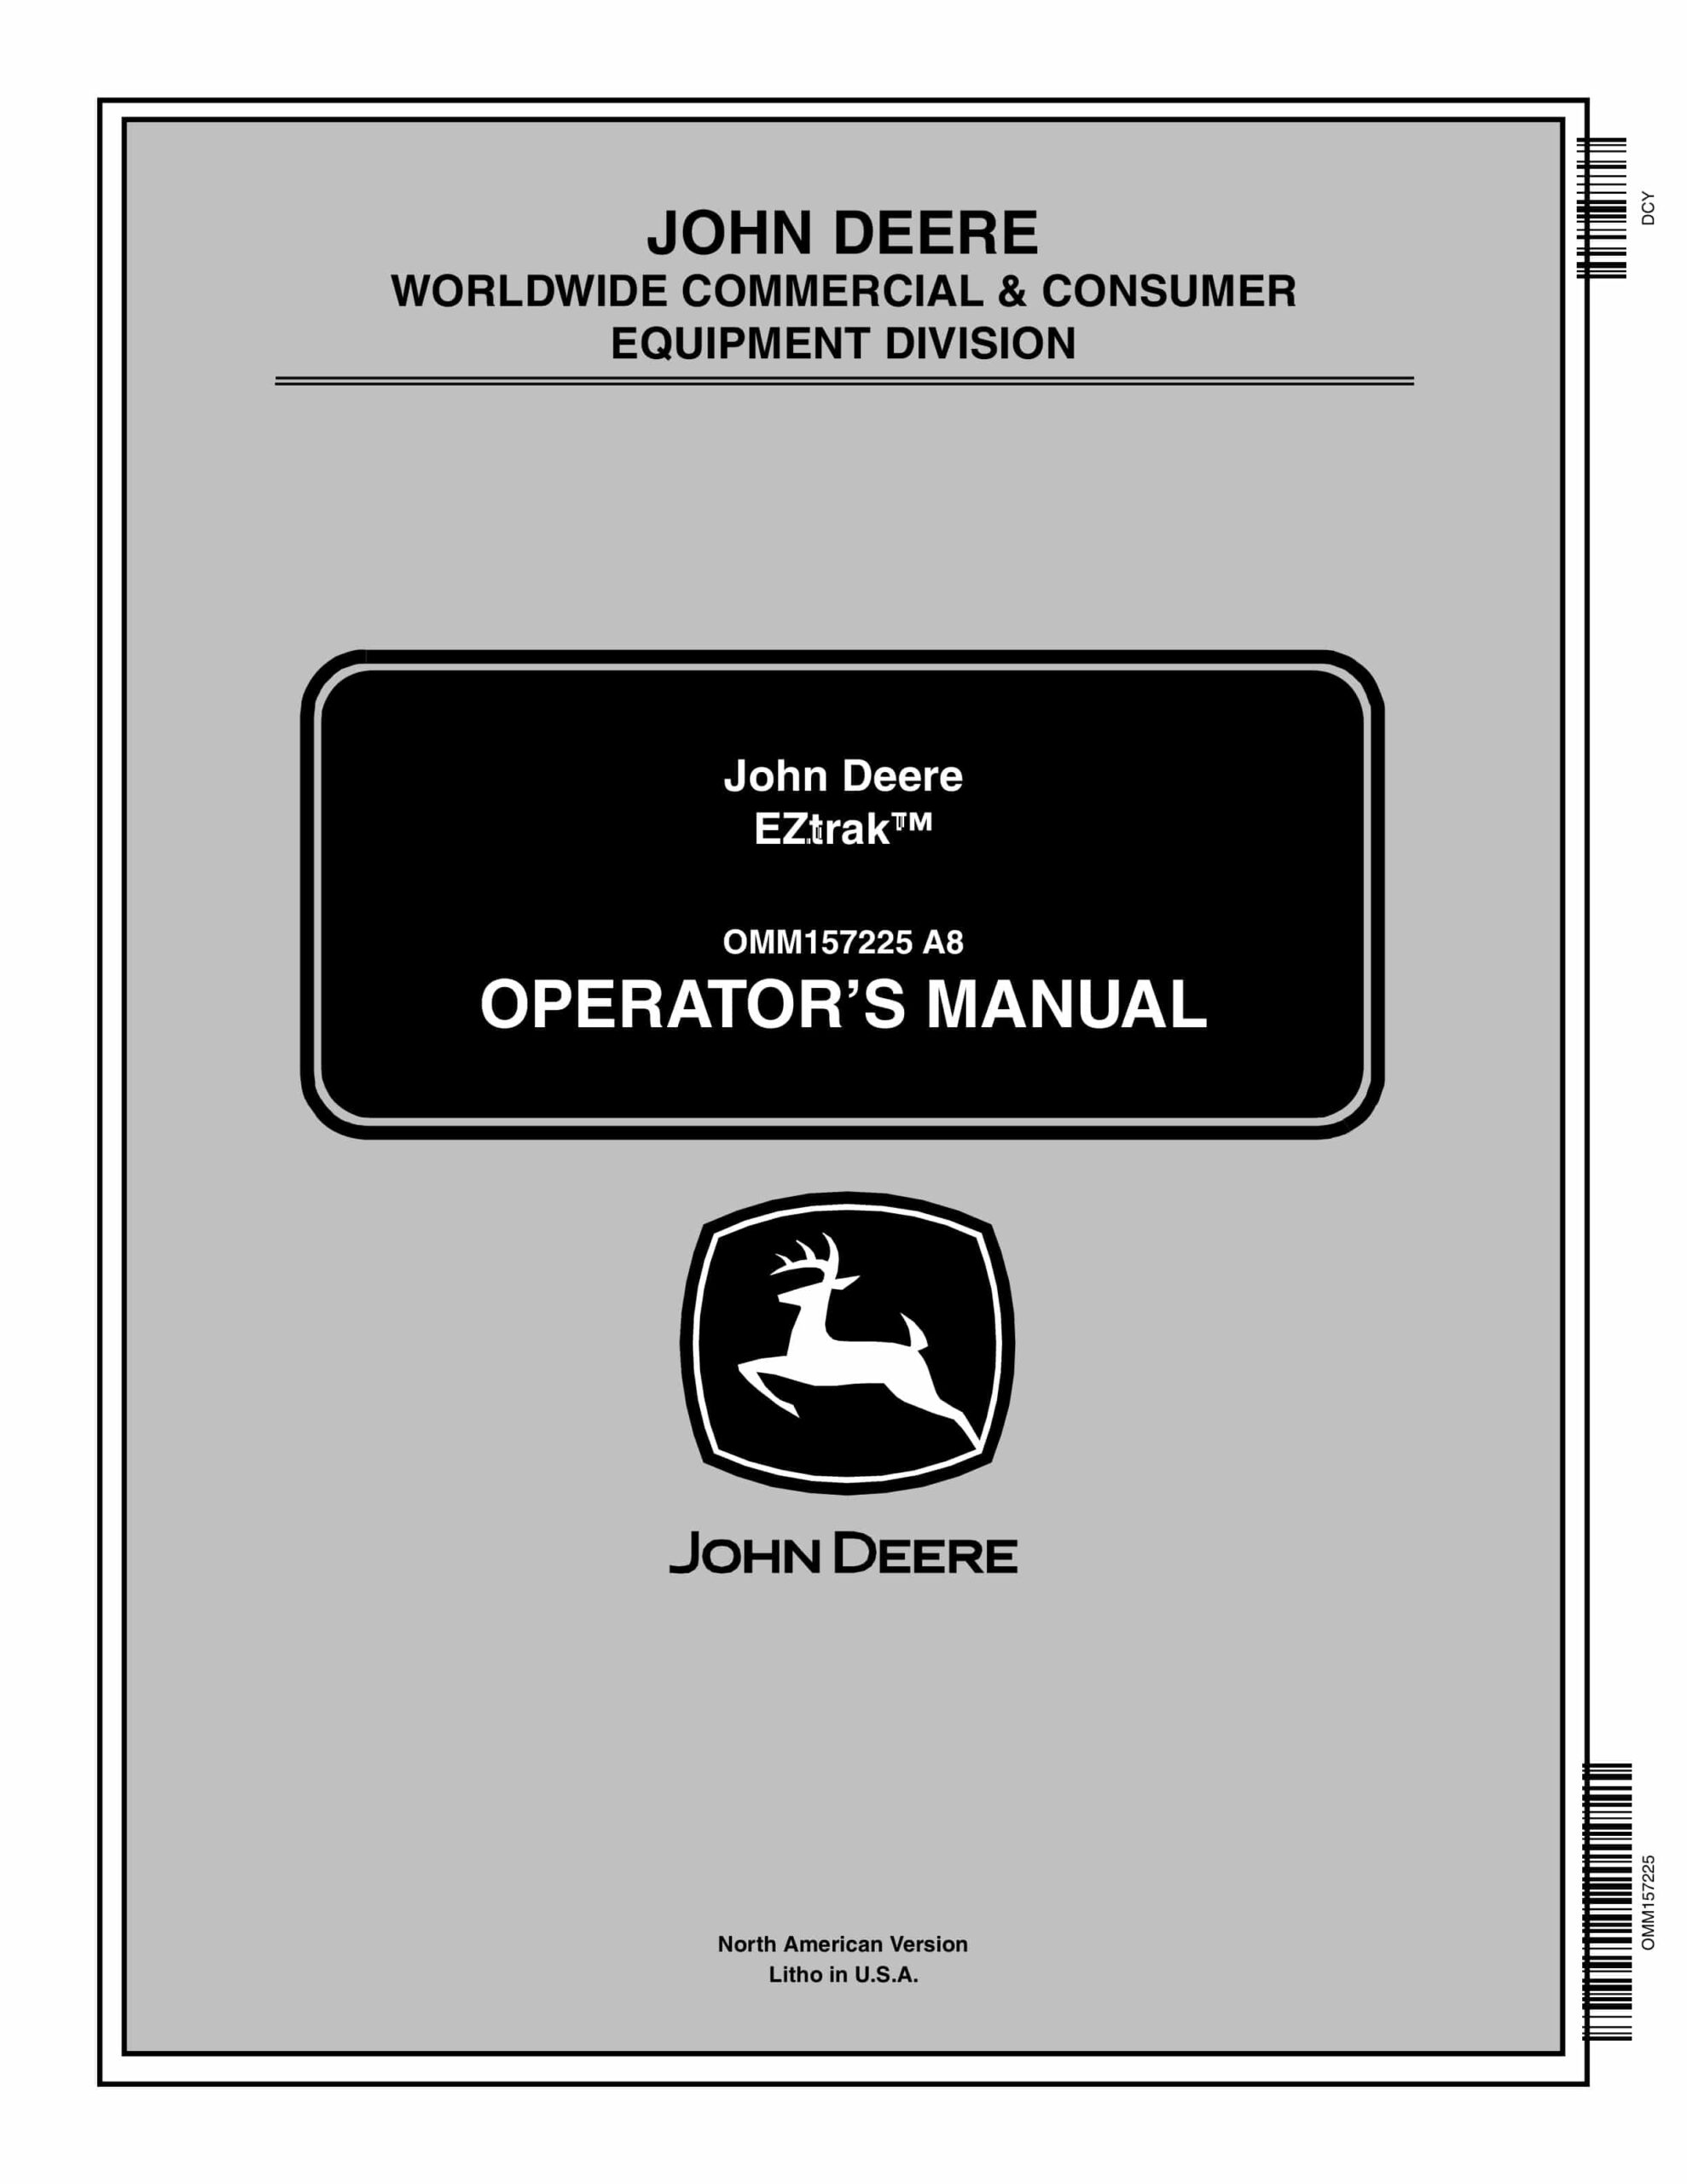 John Deere EZtrak Operator Manual OMM157225-1